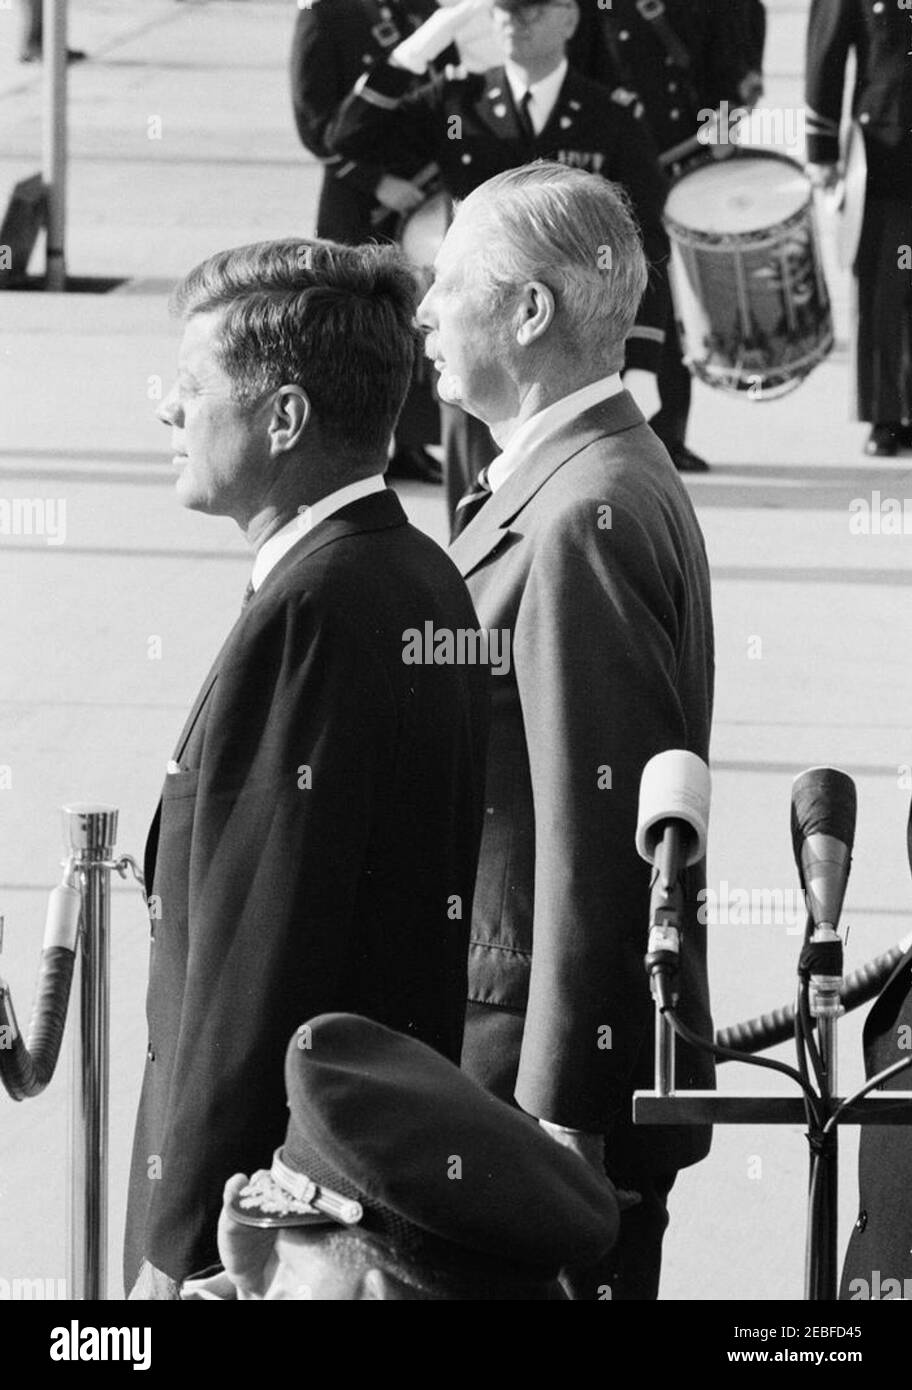 Ankunftszeremonie für Harold Macmillan, Premierminister von Großbritannien, 4:50pm Uhr. Präsident John F. Kennedy (links) und Premierminister von Großbritannien, Harold Macmillan, stehen während der Ankunftszeremonien zu Ehren von Premierminister Macmillan auf der Überprüfungsplattform. Andrews Air Force Base, Maryland. Stockfoto